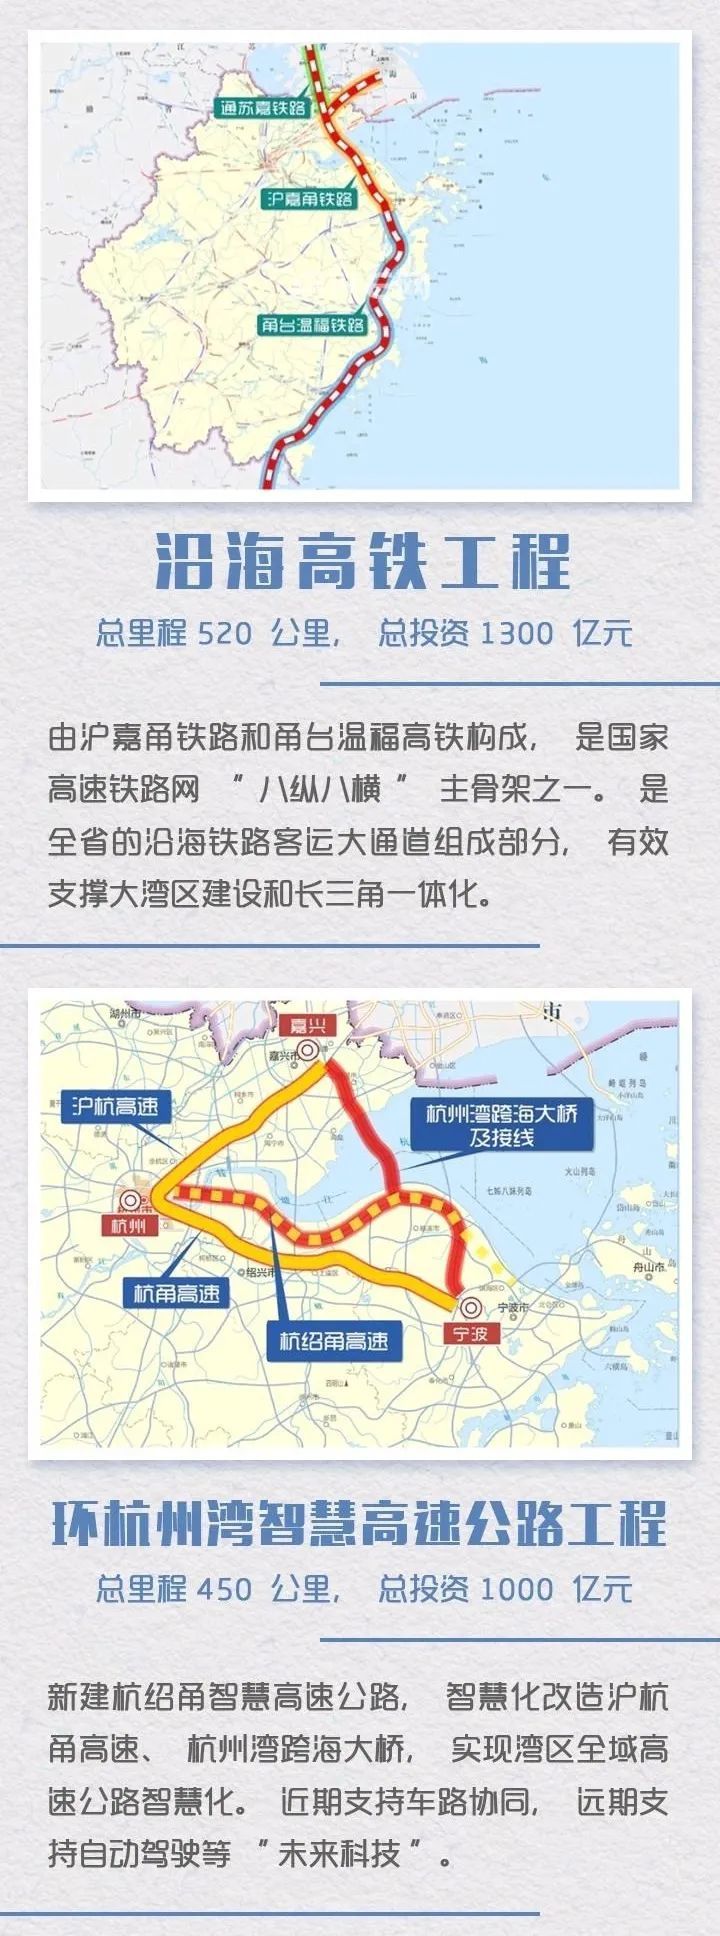 沪杭甬超级磁浮,环杭州湾智慧高速公路,杭州萧山机场综合枢纽,千吨级